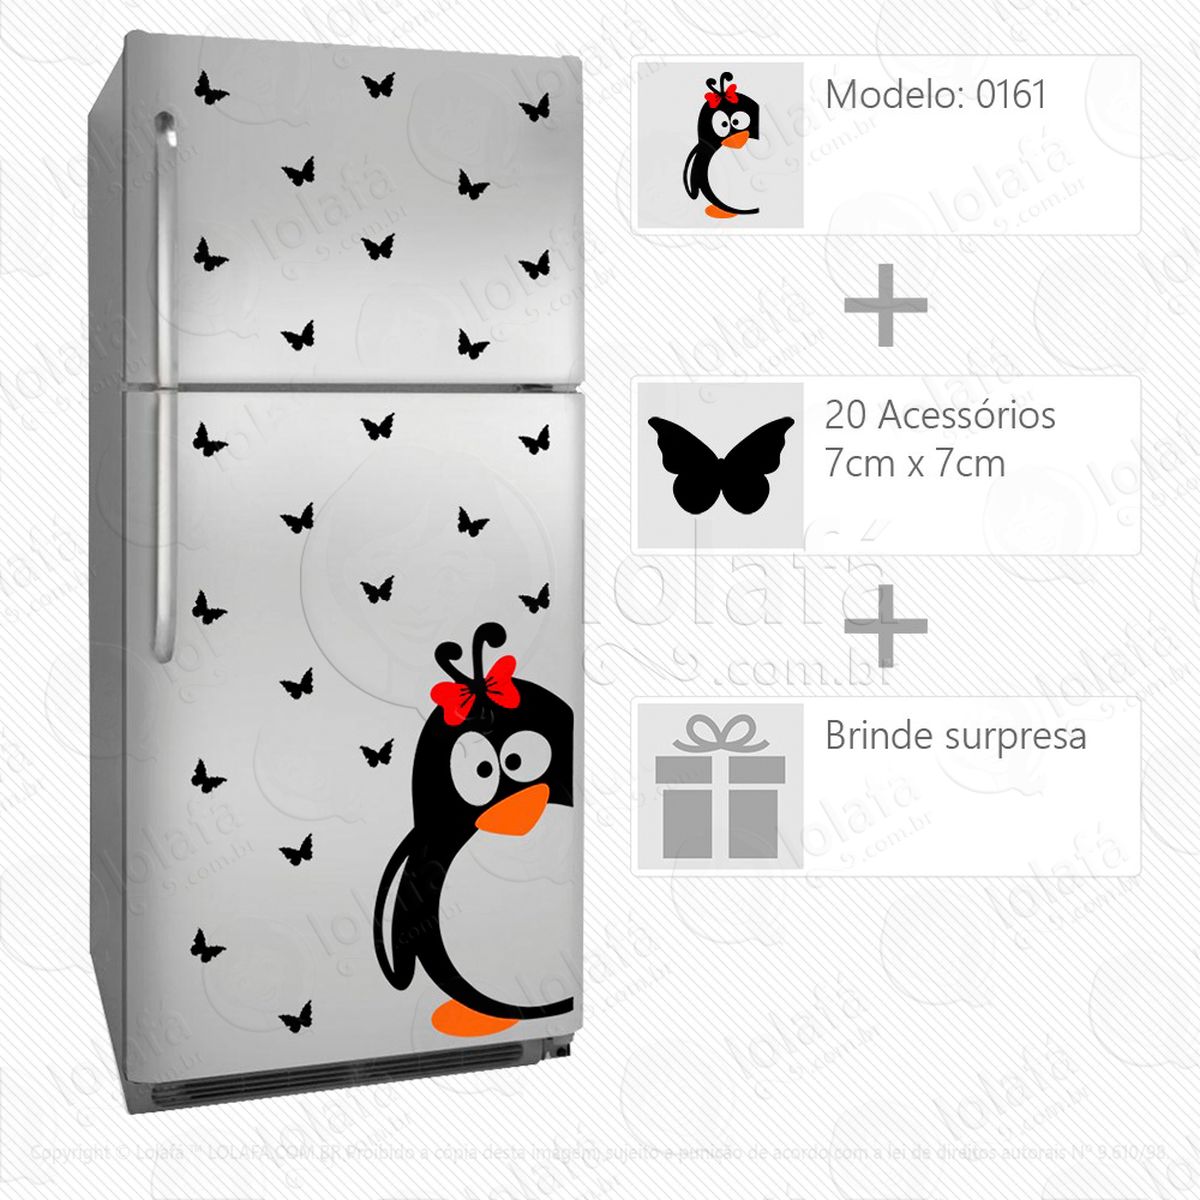 pinguim adesivo para geladeira e frigobar - mod:161